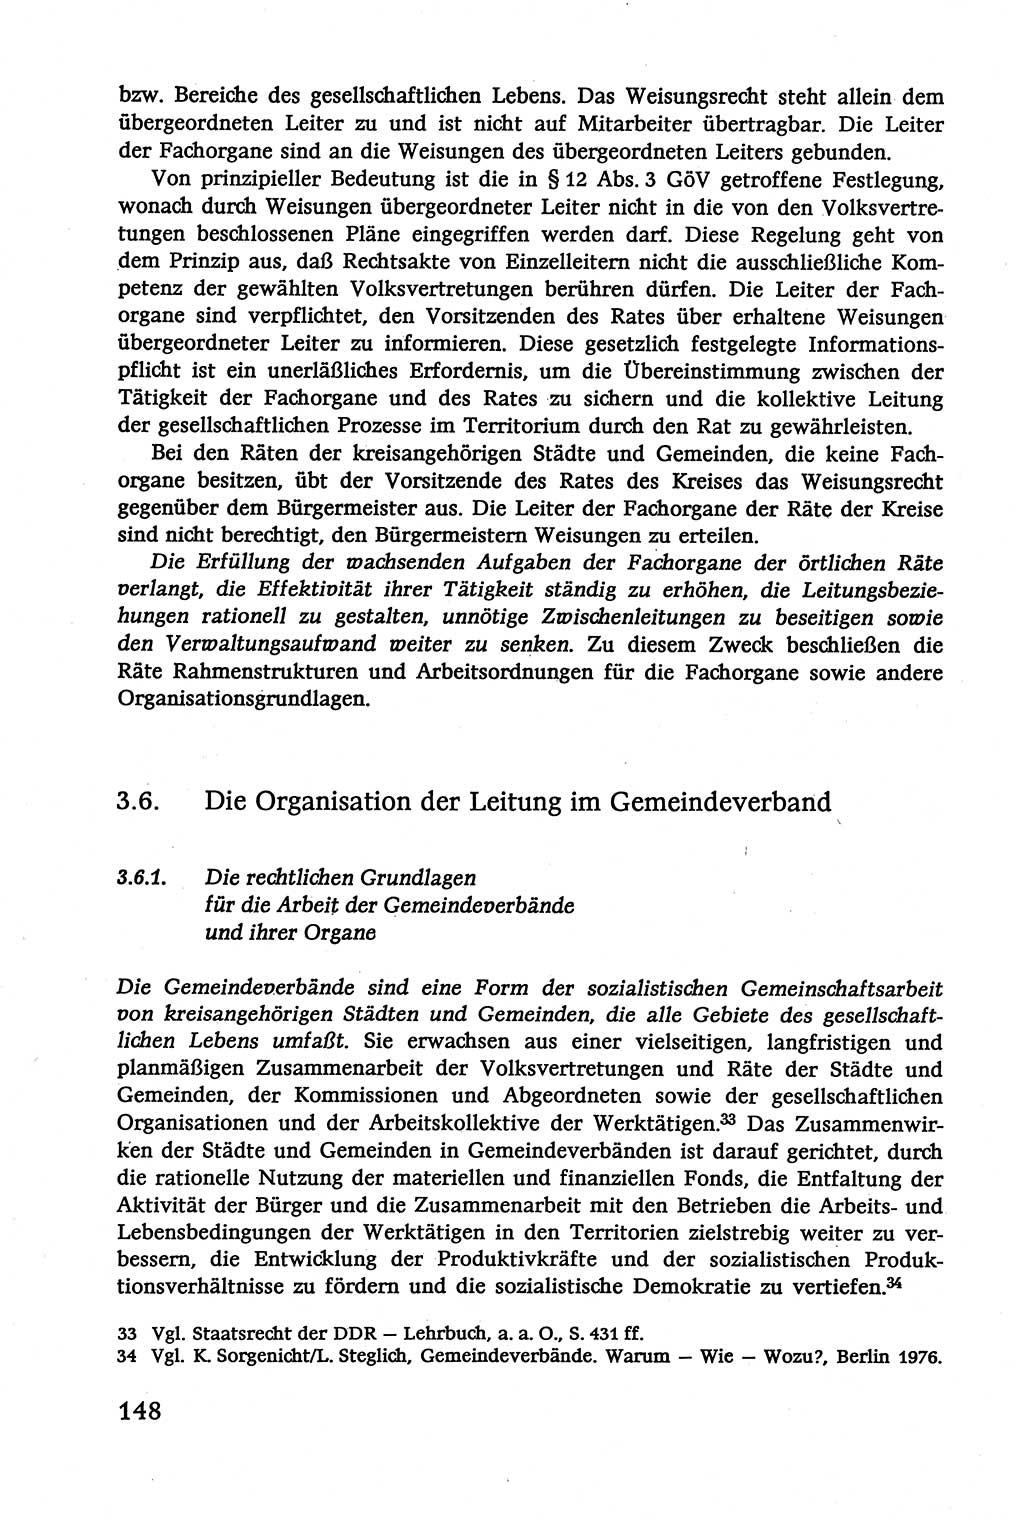 Verwaltungsrecht [Deutsche Demokratische Republik (DDR)], Lehrbuch 1979, Seite 148 (Verw.-R. DDR Lb. 1979, S. 148)